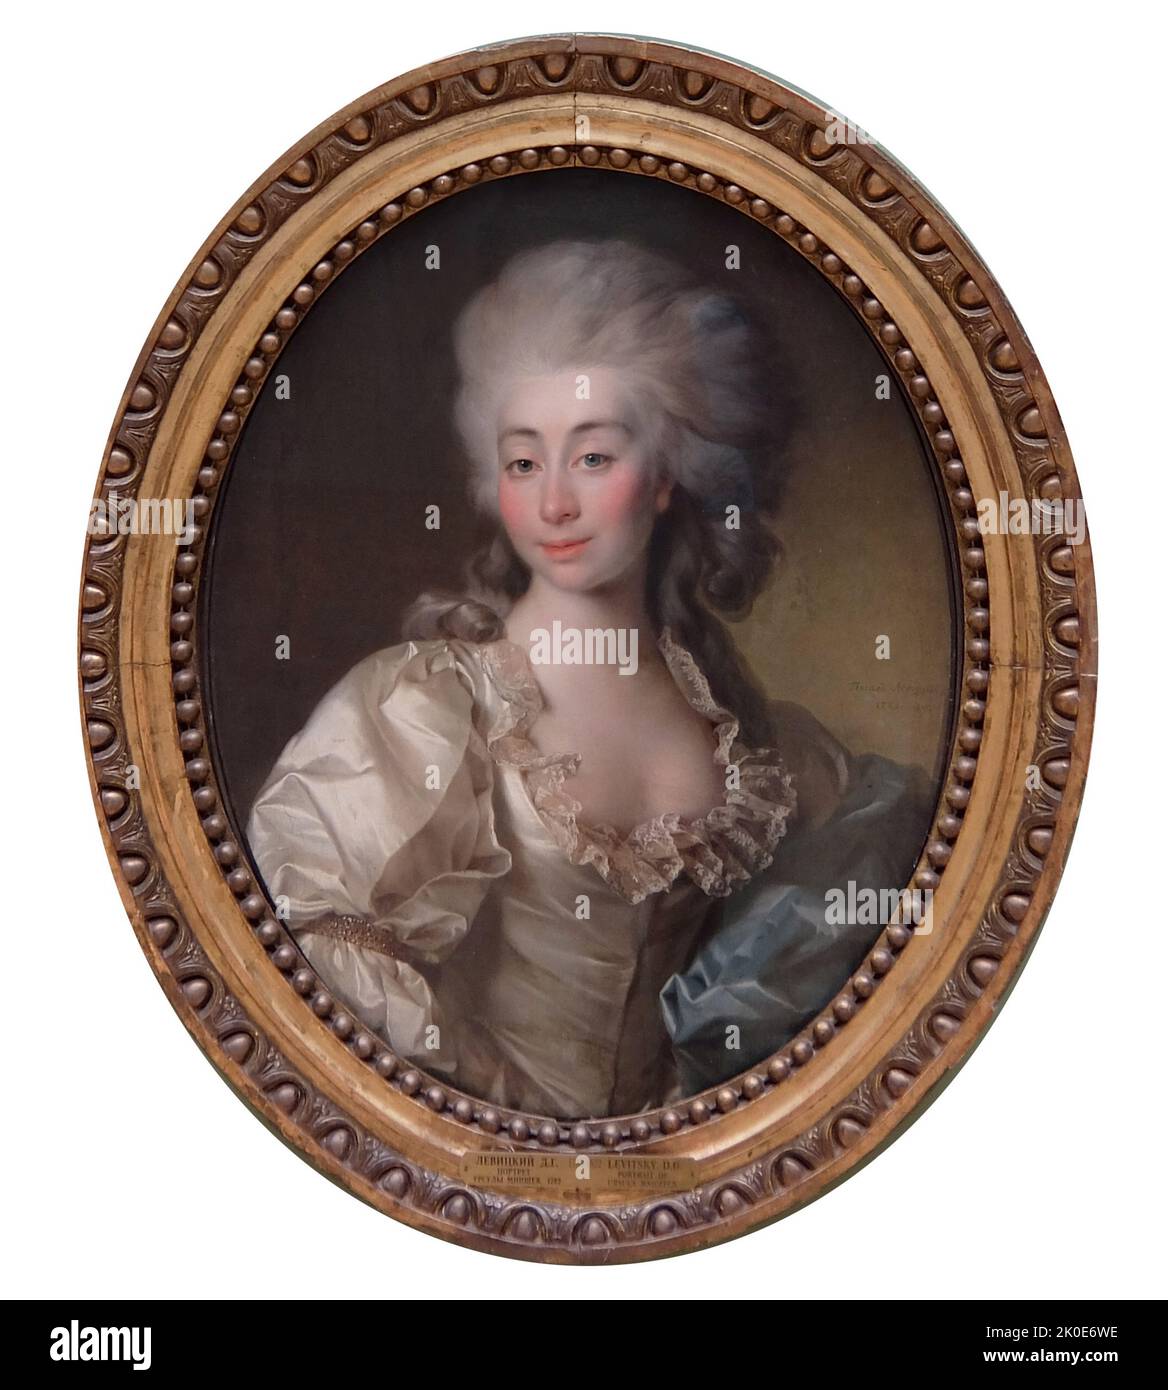 Porträt der Gräfin Ursula Mniszek von Dmitri Grigoriewitsch Levitsky. 1782. Dmitri Grigorjewitsch Levitski (1735. Mai - 17. April 1822) war ein russischer kaiserlicher Künstler und Porträtmaler Saporoschischer Kosakenabstammung. Stockfoto